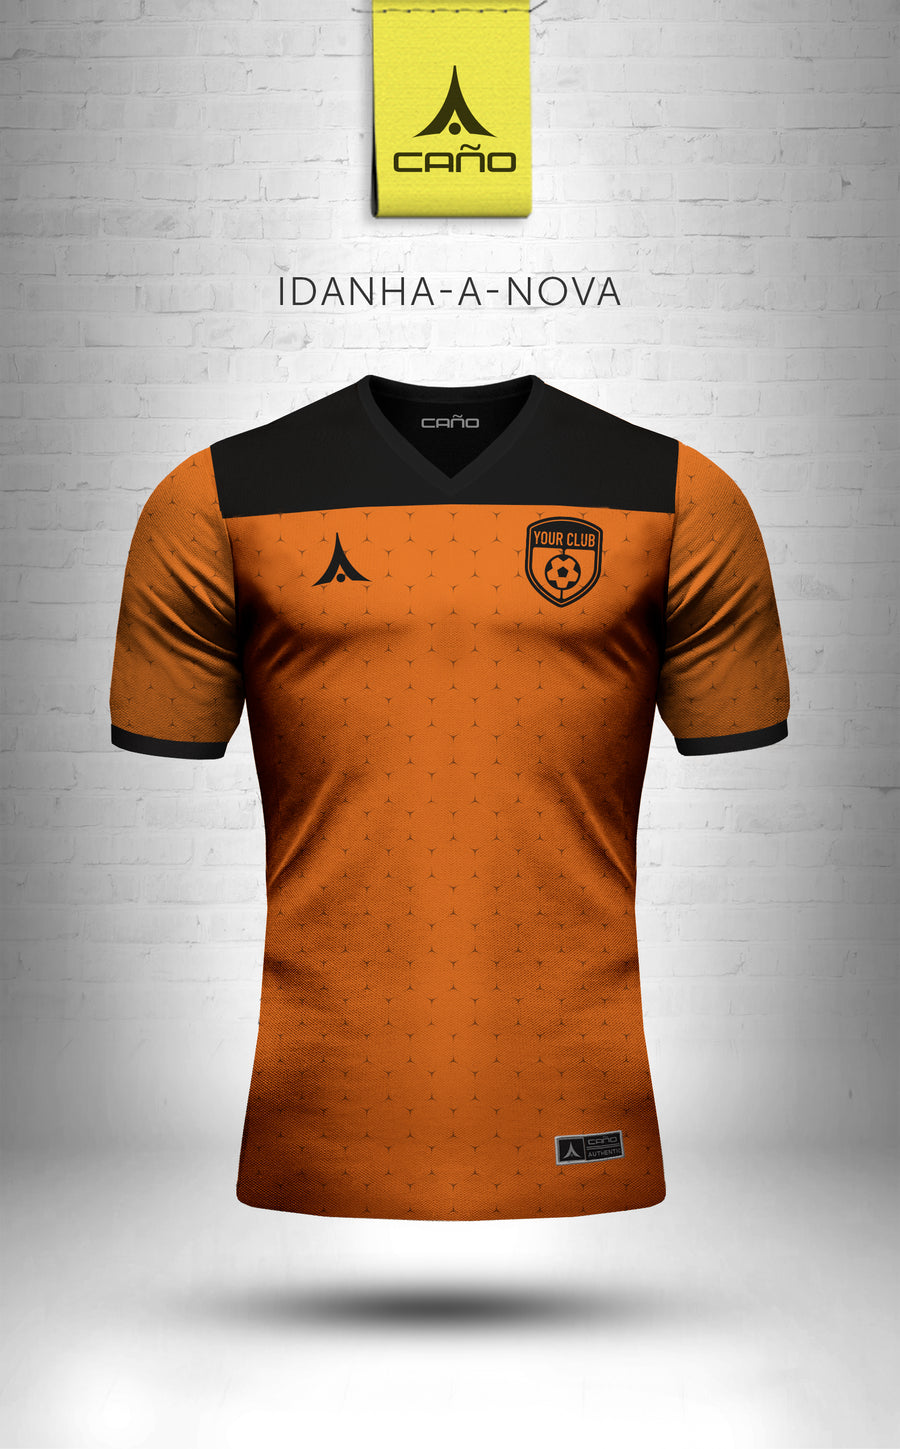 Idanha-a-Nova in orange/black